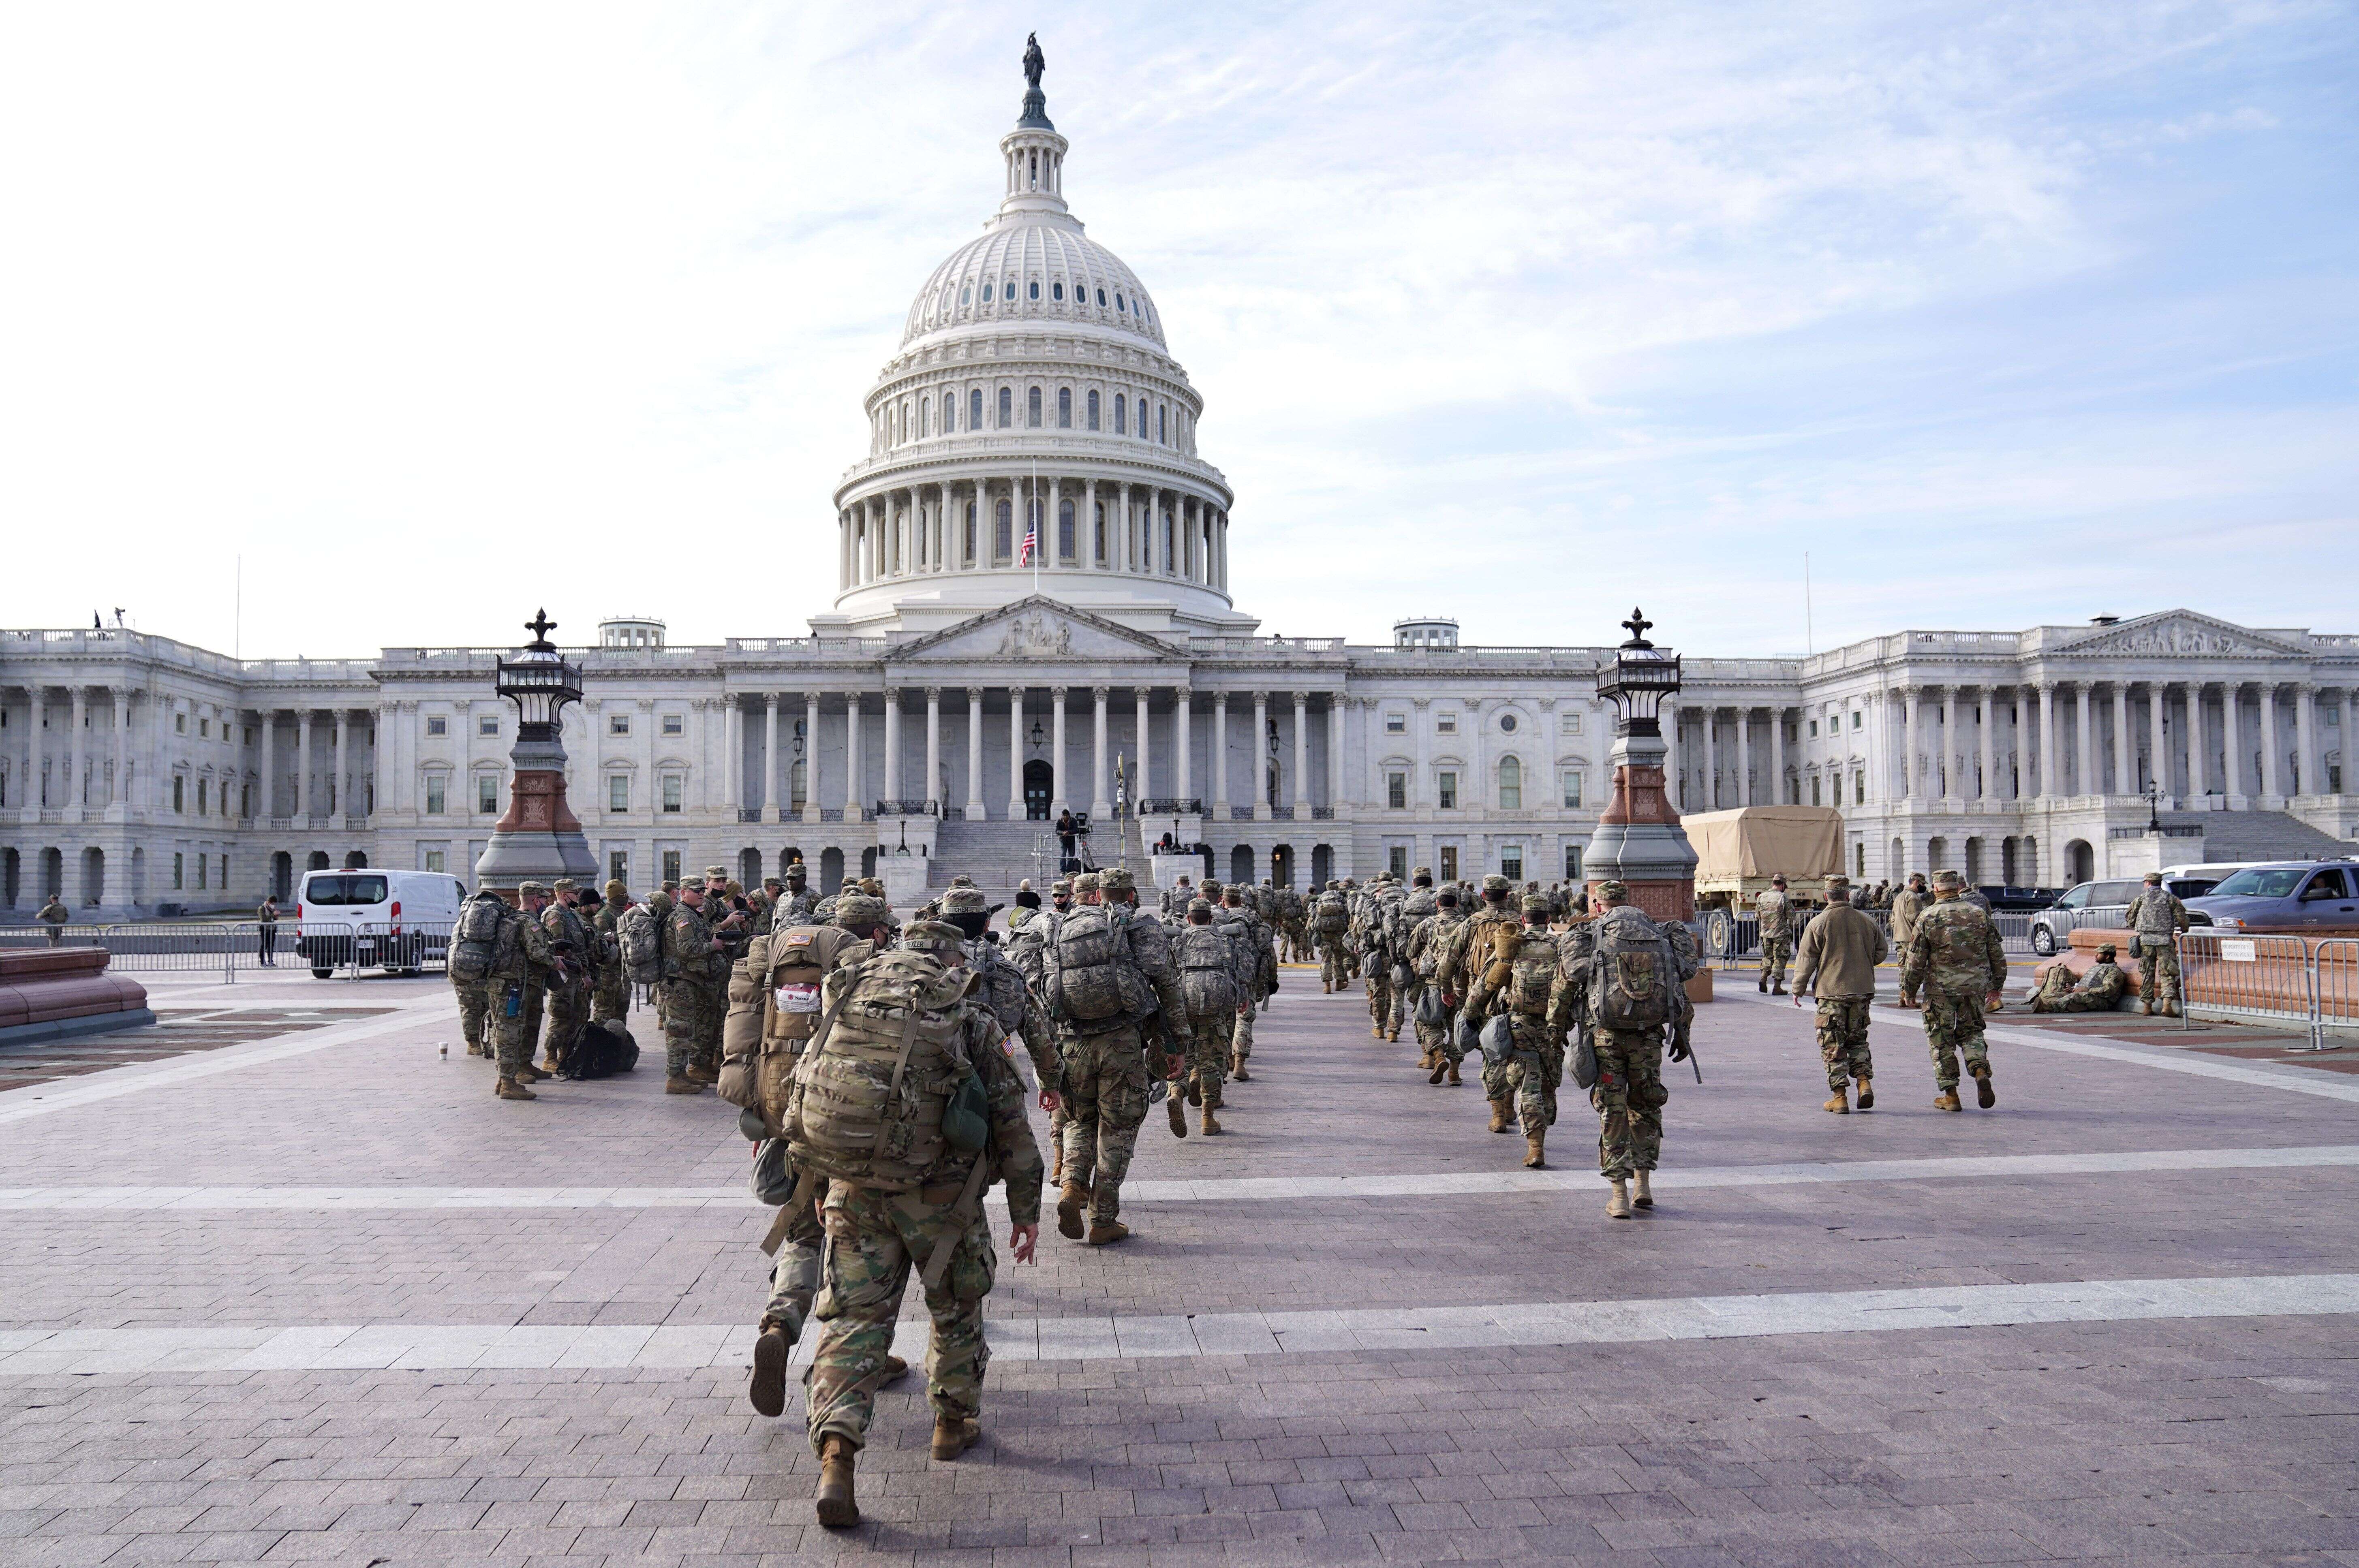 Les troupes de la Garde nationale à l'extérieur du Capitole, à Washington aux États-Unis, le 16 janvier 2021.